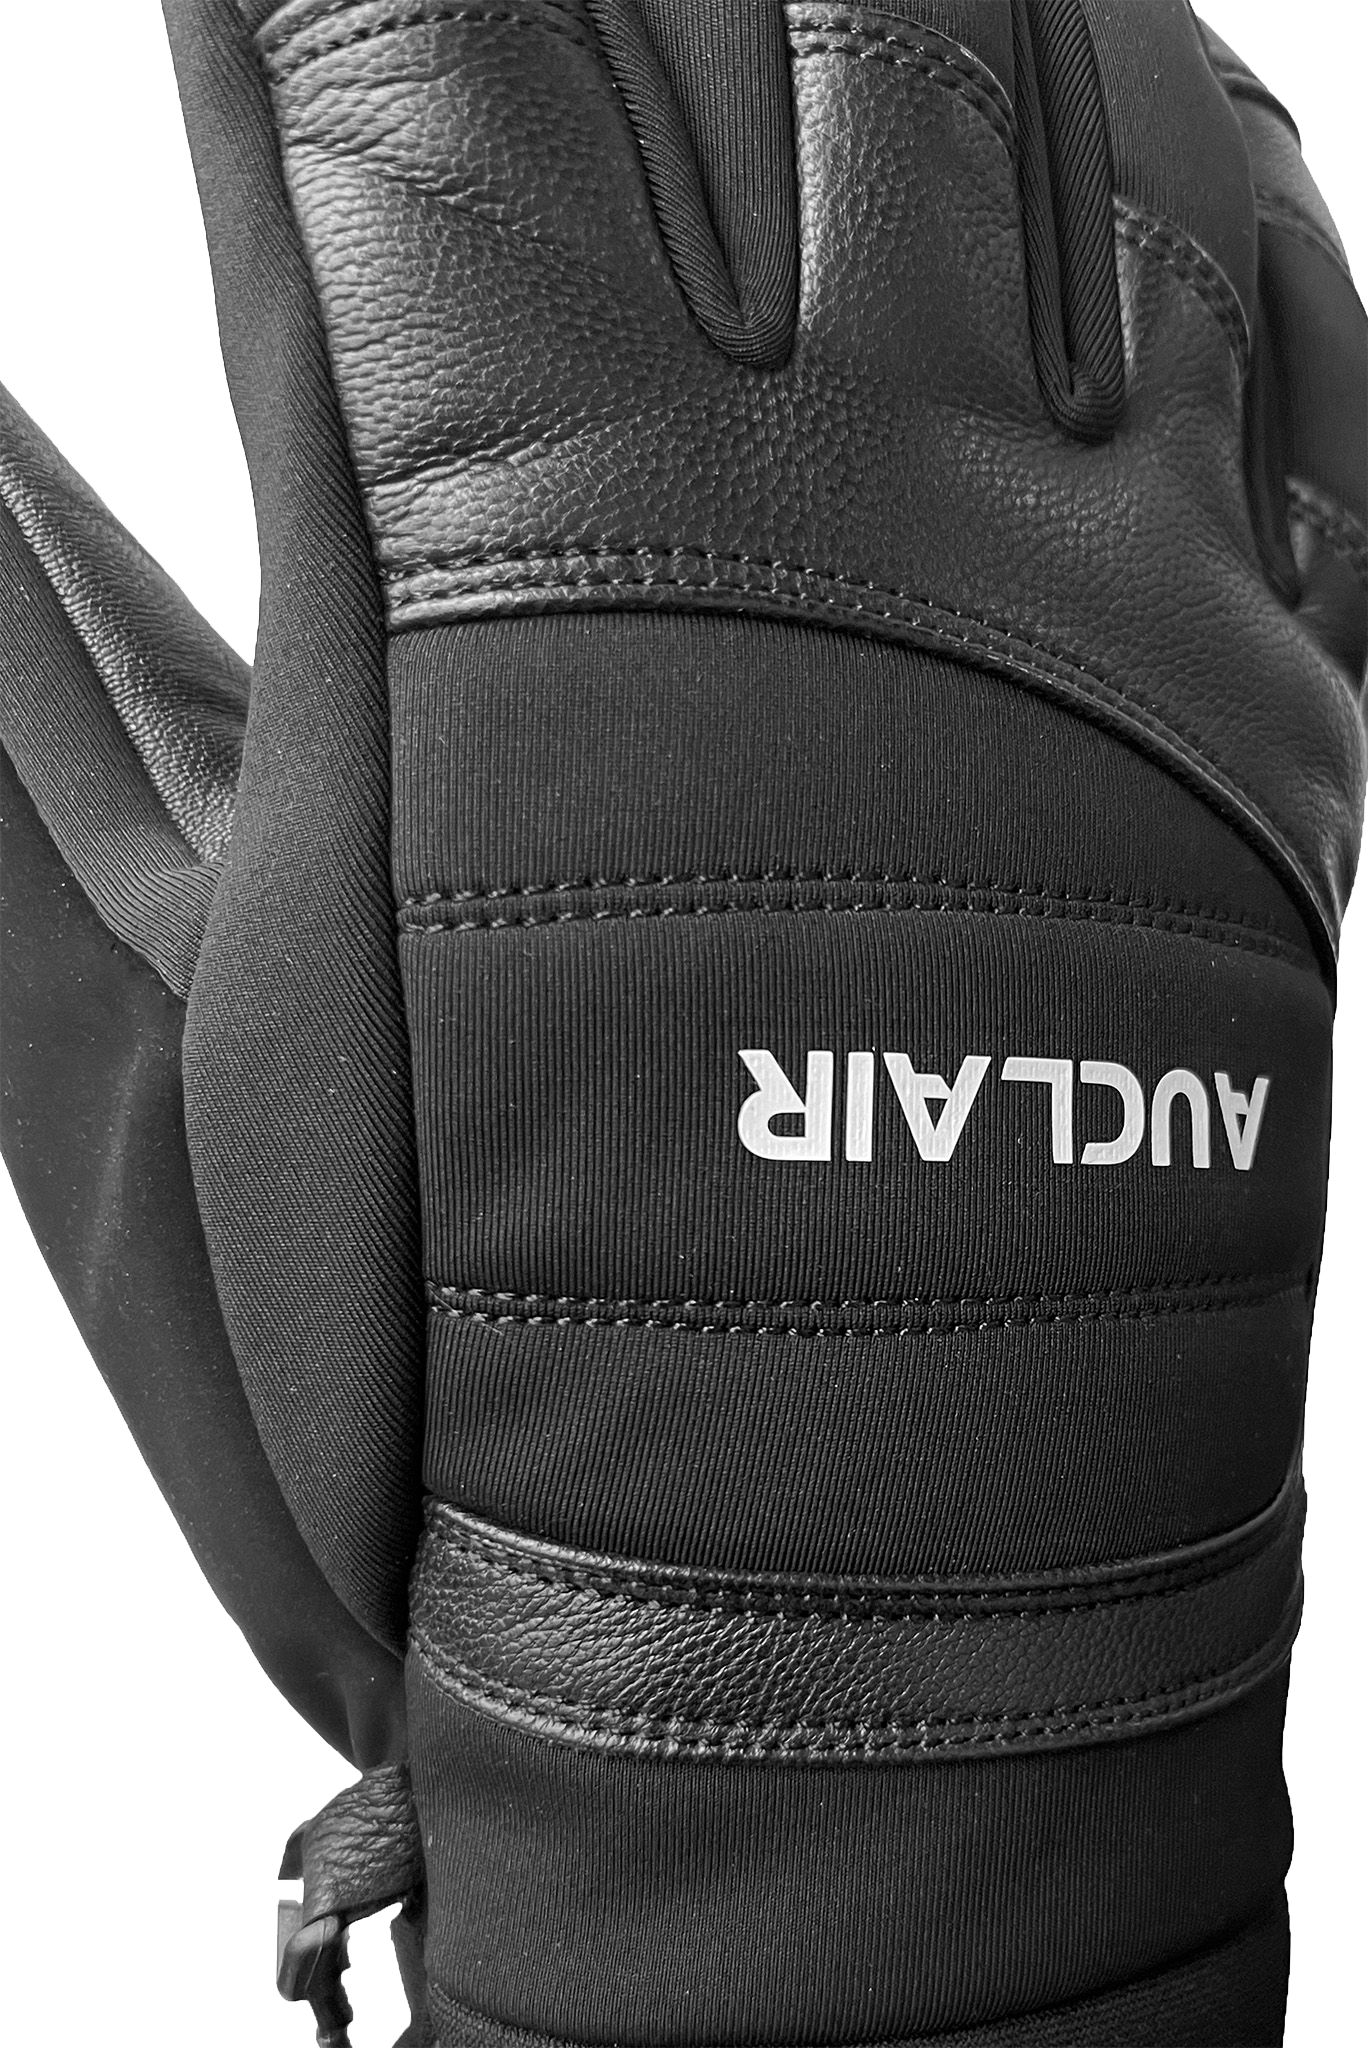 Trail Ridge Gloves - Adult-Glove-Auclair-Auclair Sports